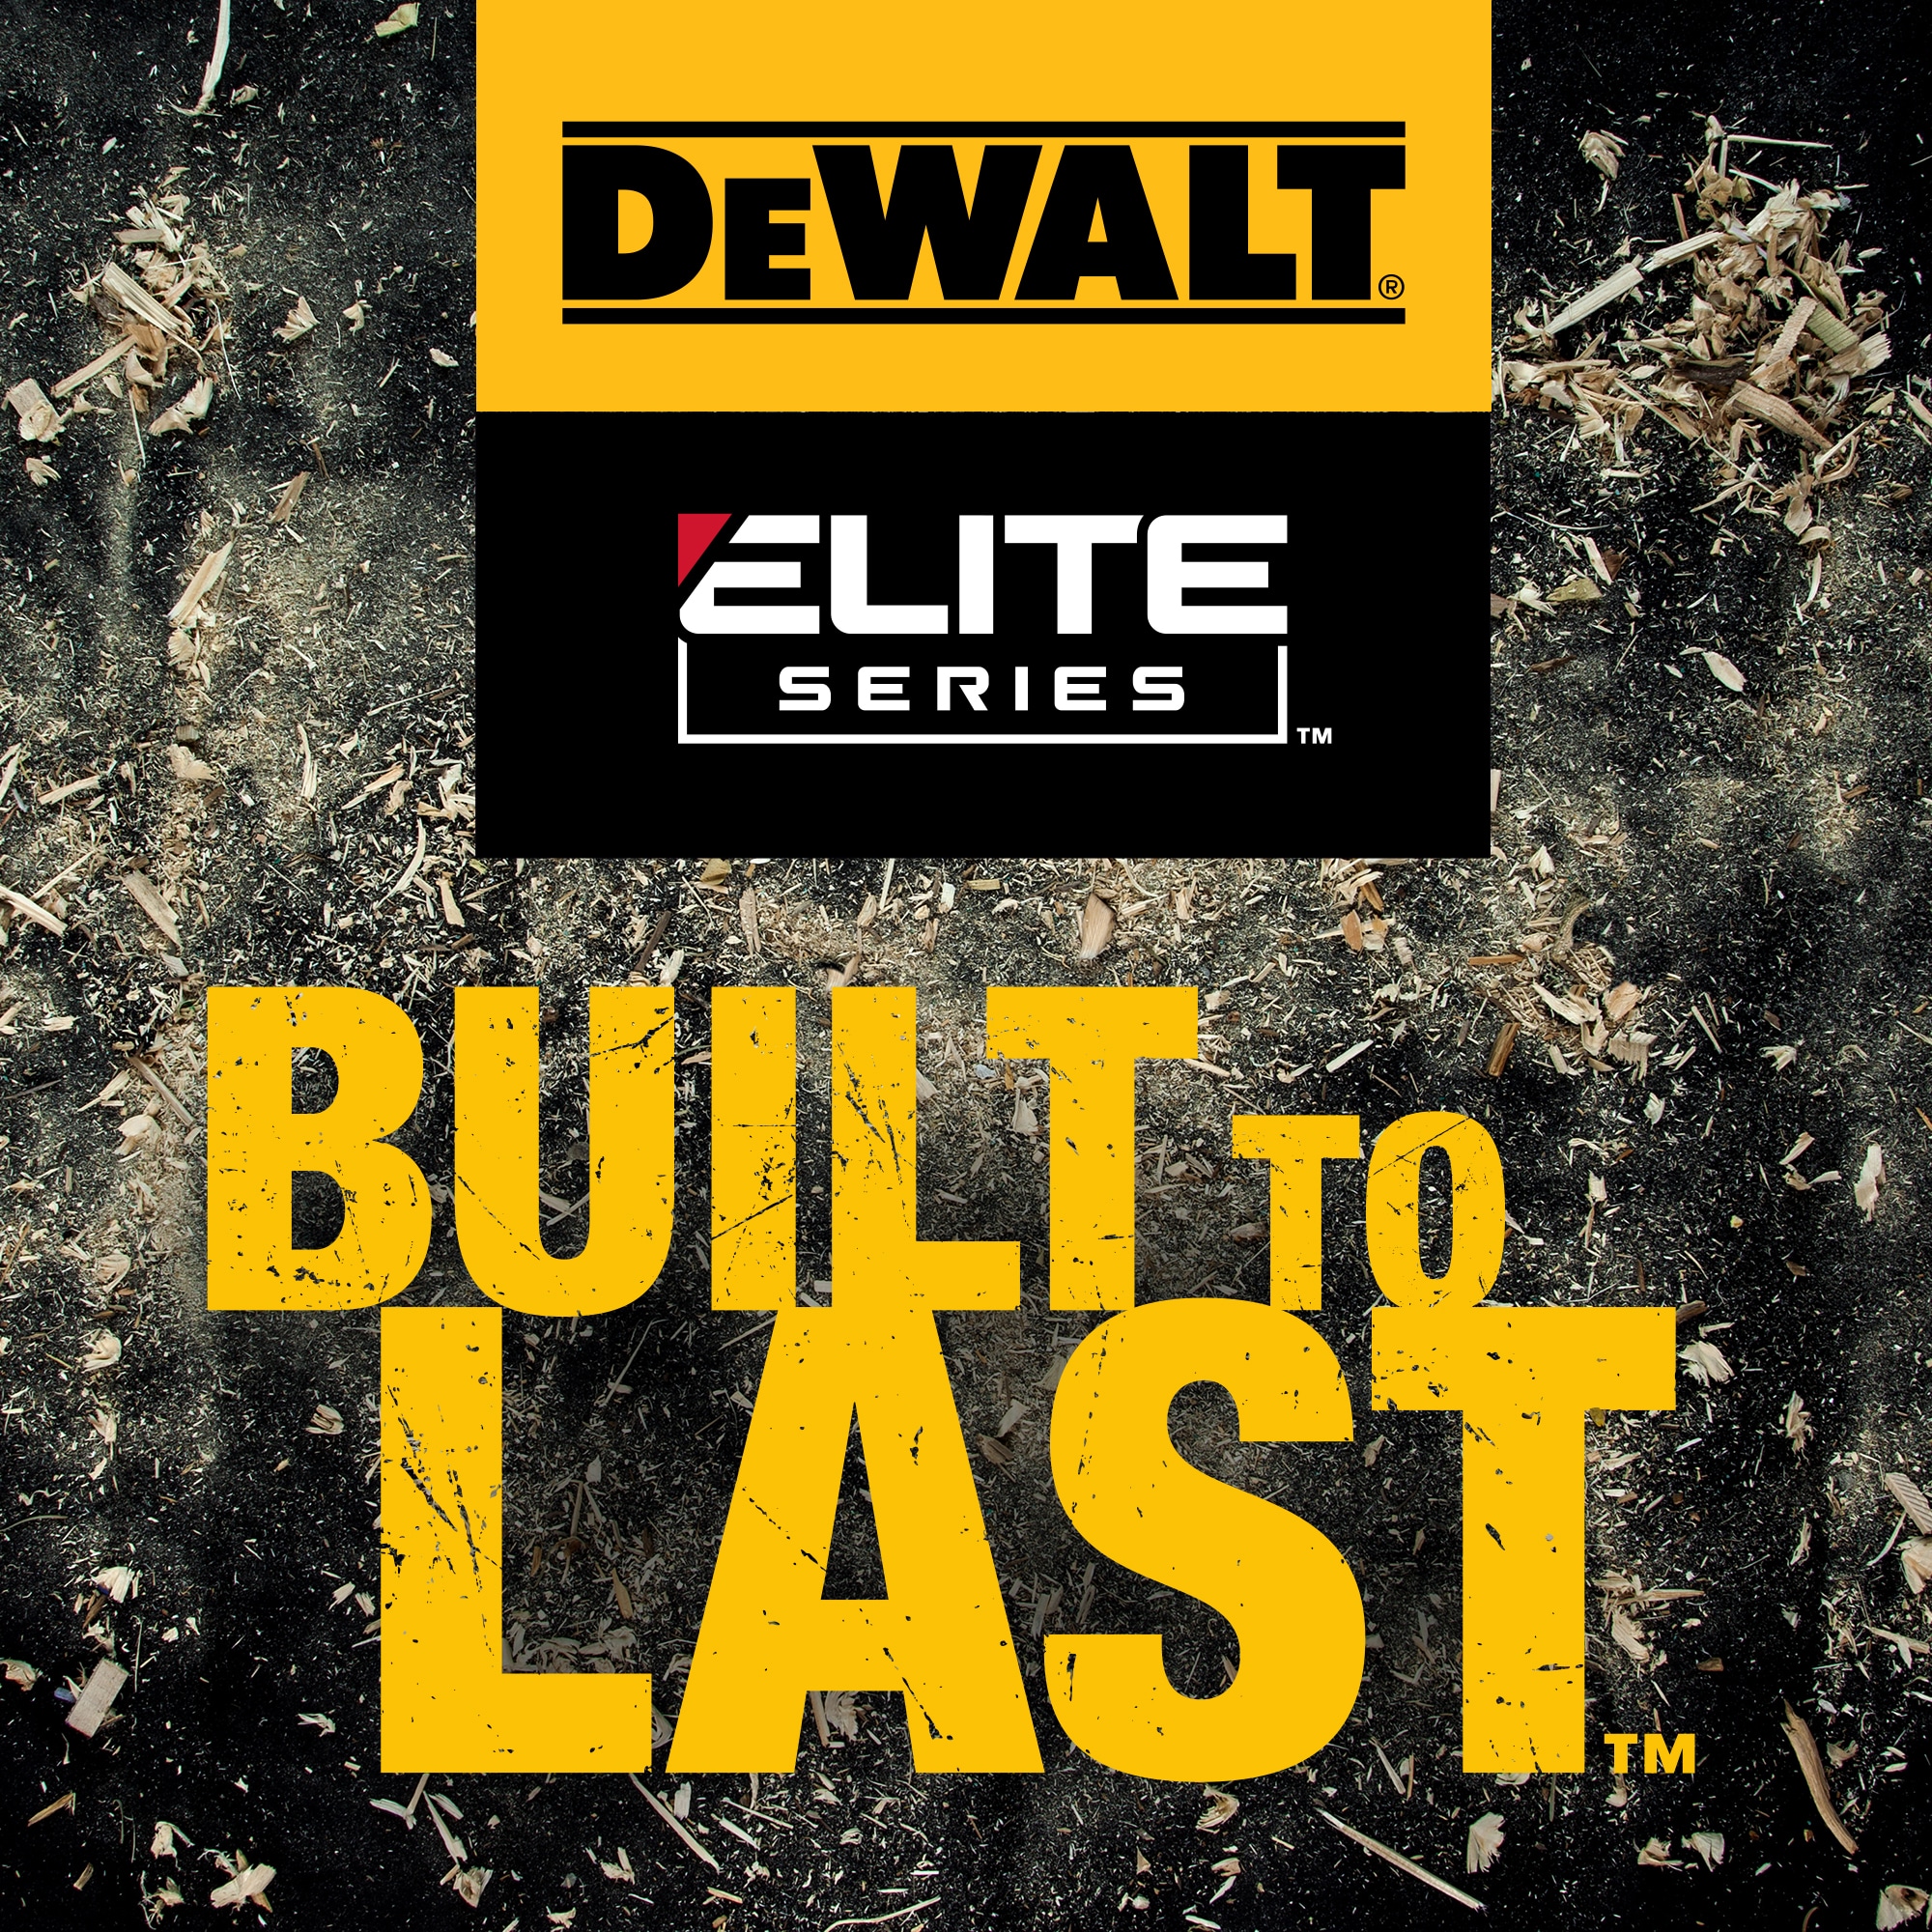 DeWalt DWAW61224 Elite Series Circular Saw Blade, 6-1/2 inch